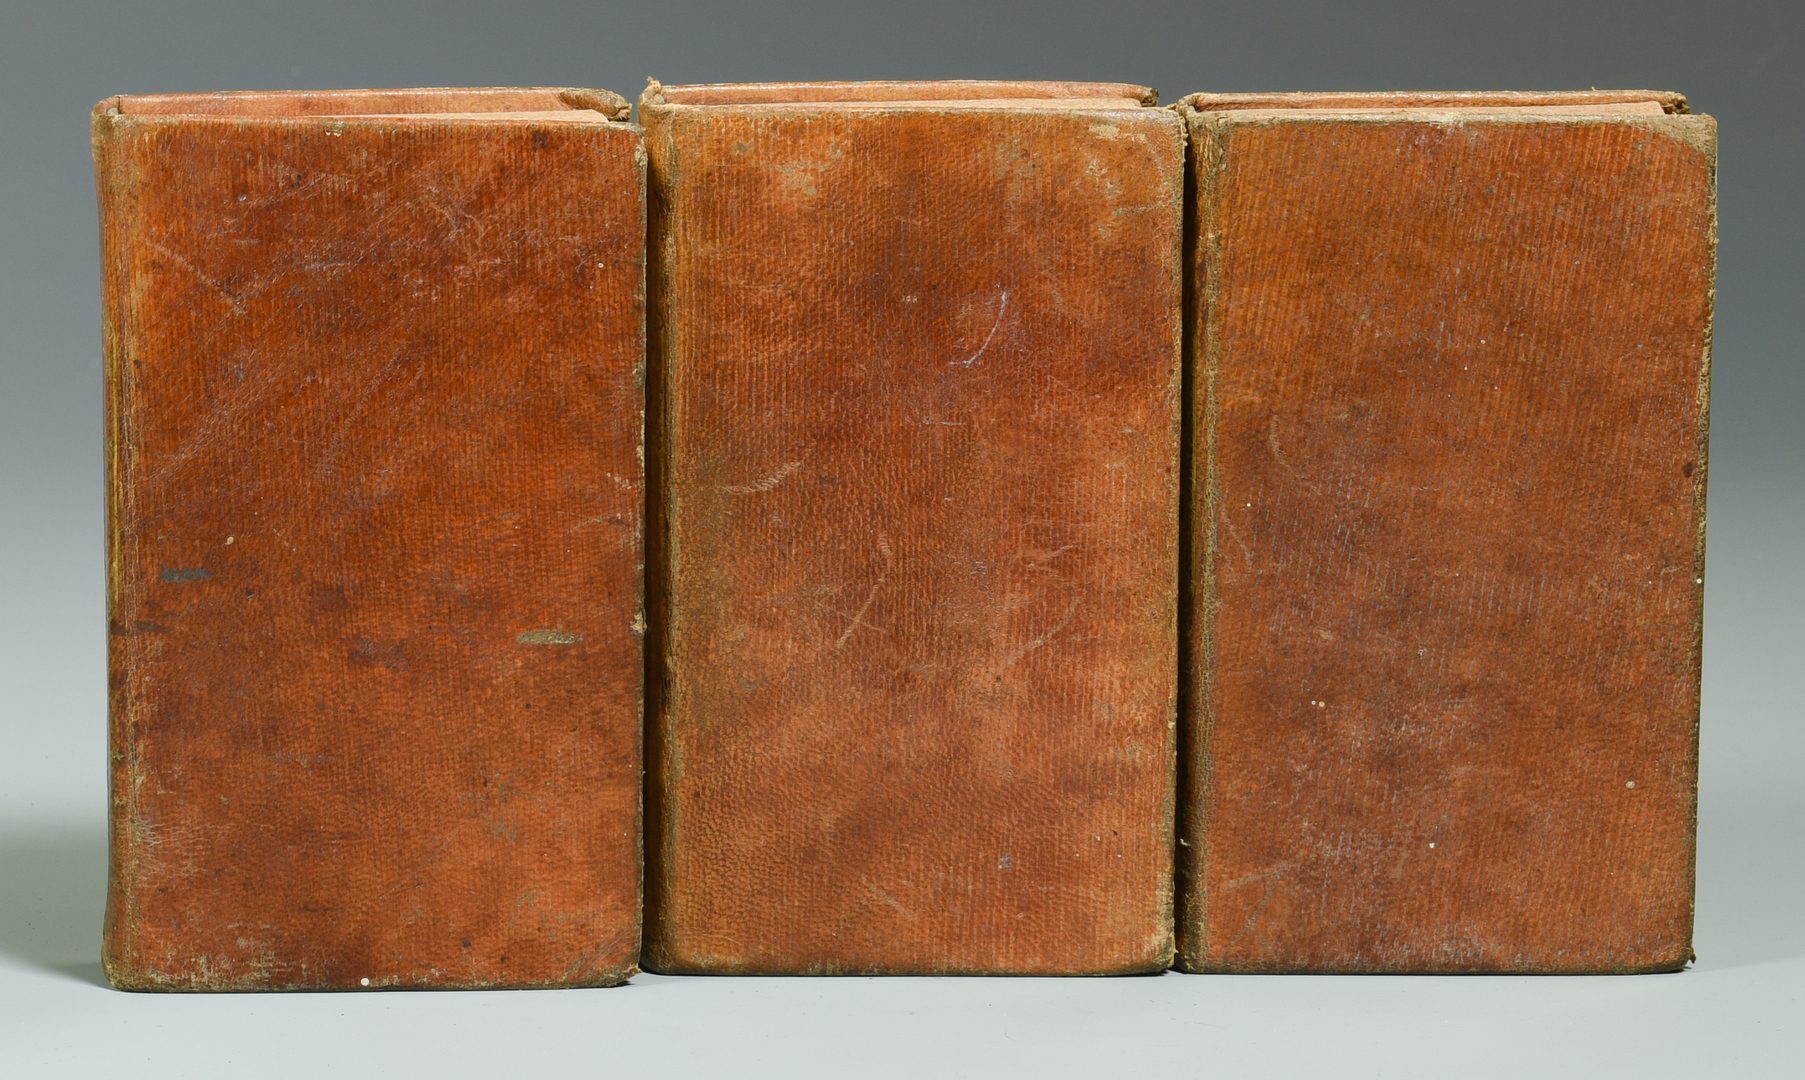 Lot 729: 1834 Works of Robert Burns, Allan Cunningham